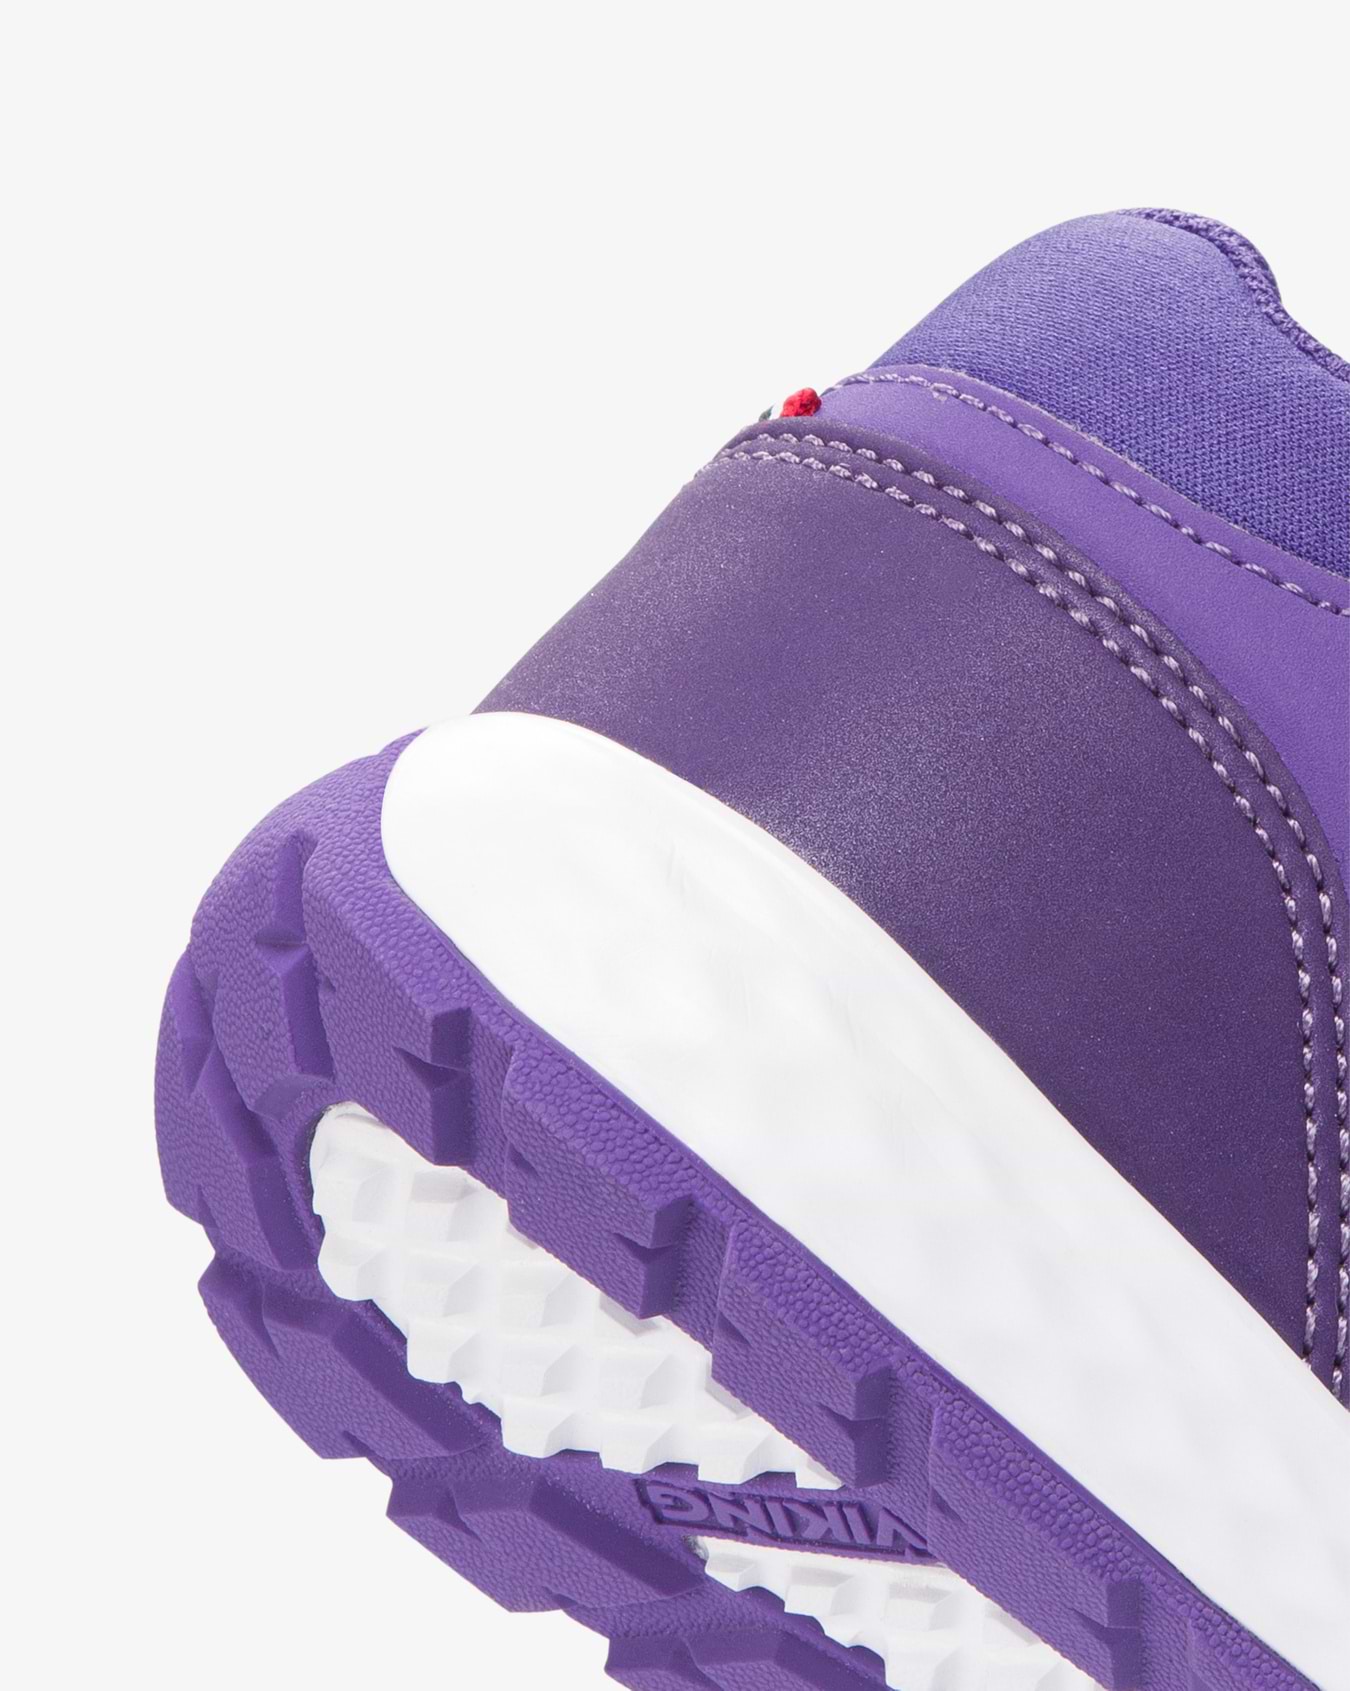 Spectrum Reflex Mid GTX Violet Sneaker